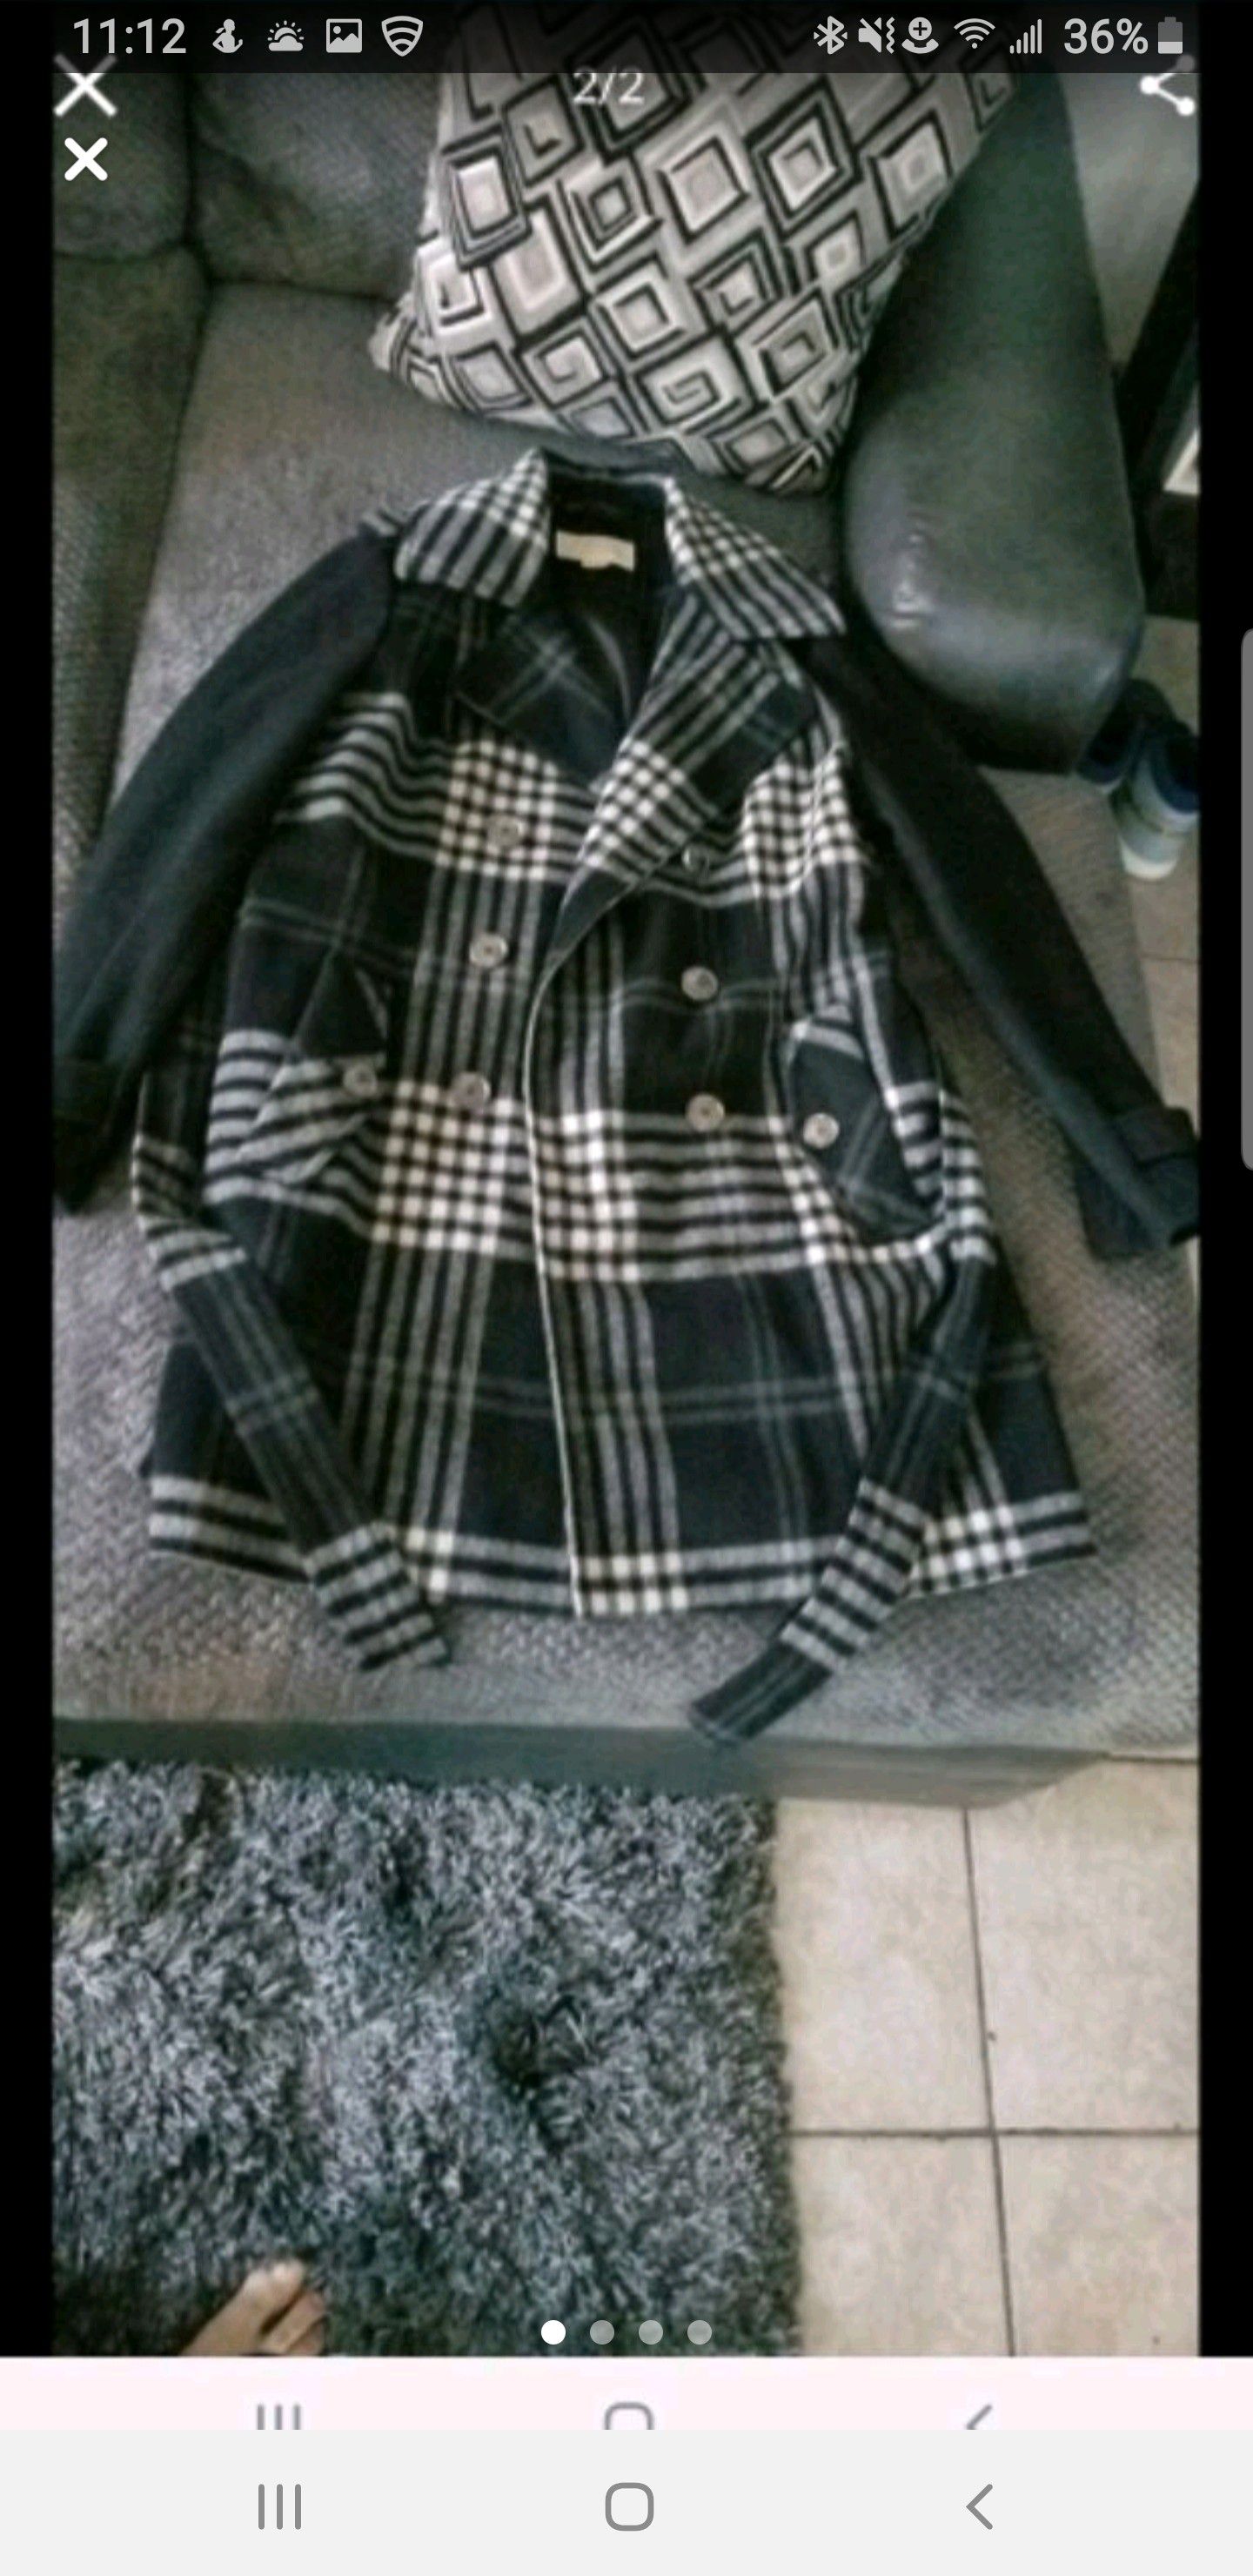 Michael Kors women's coat size14